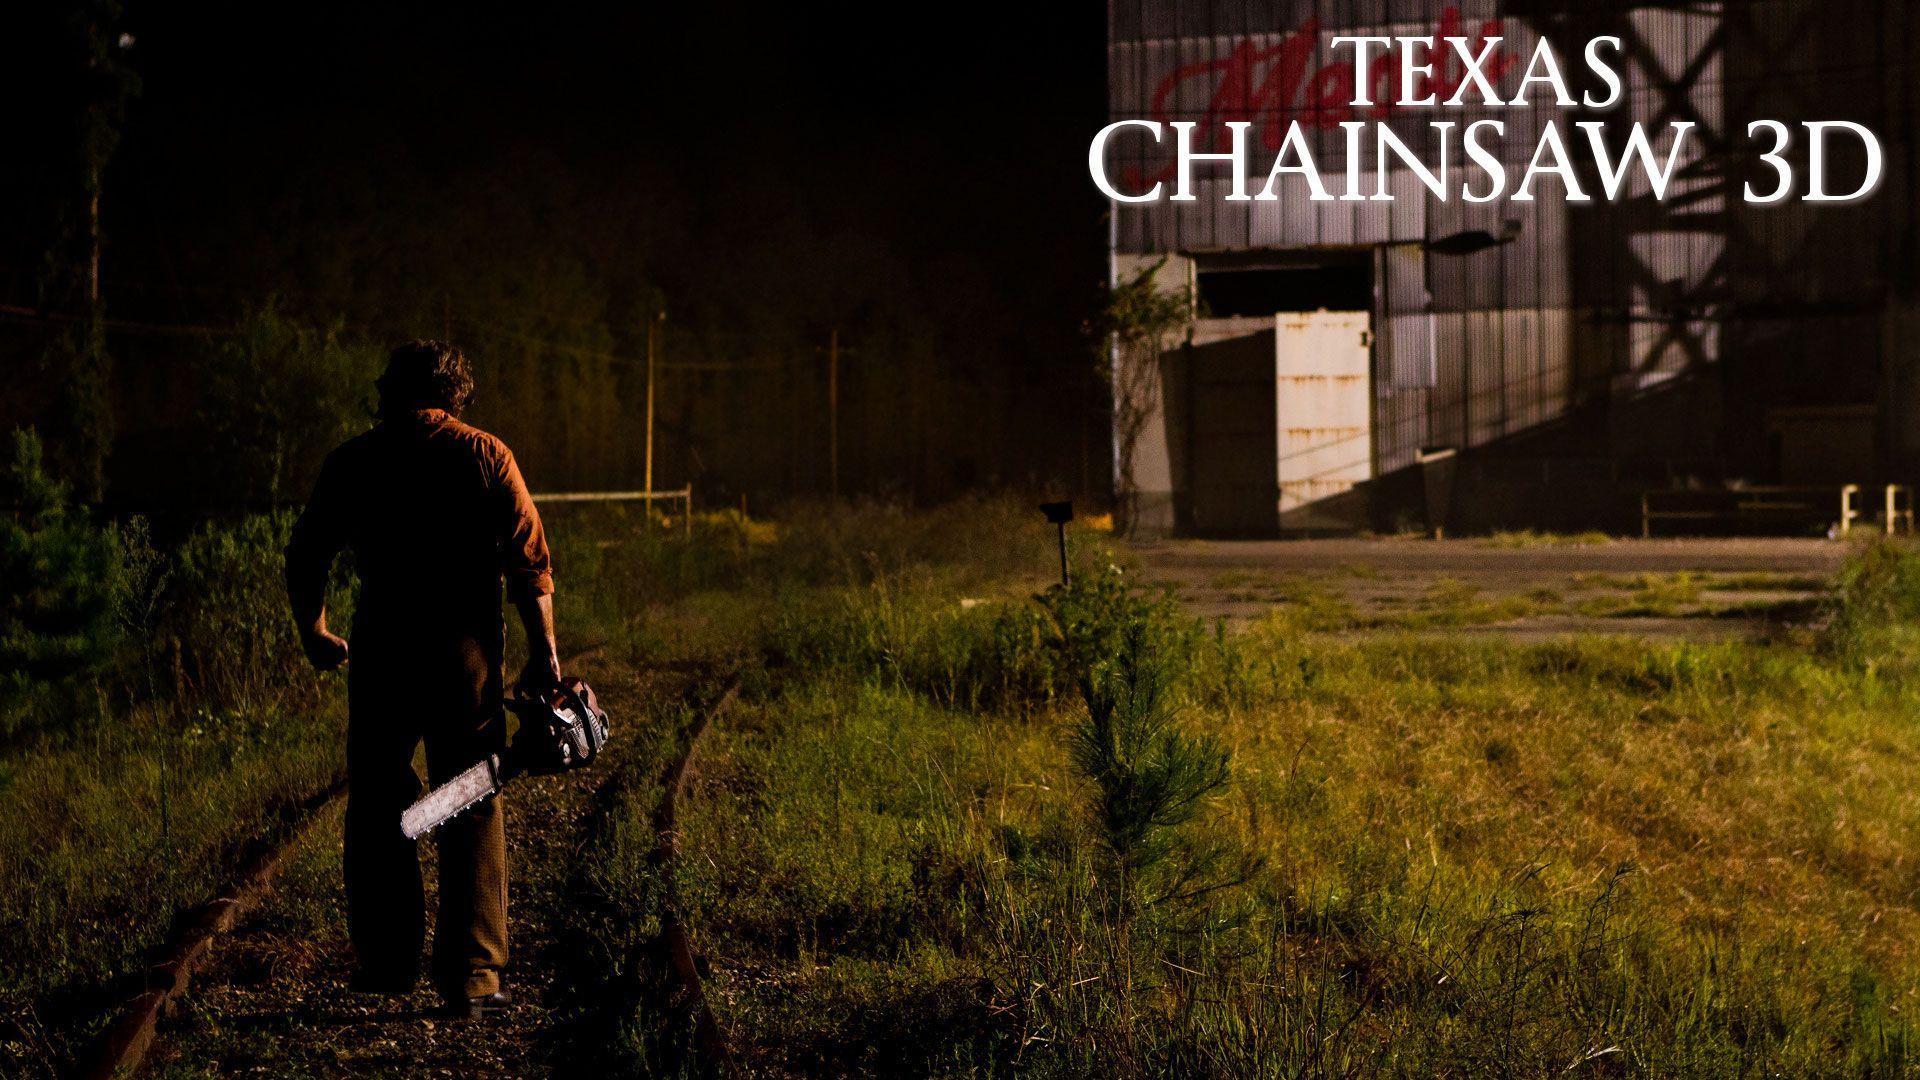 Texas Chainsaw Massacre 3D Wallpaper 2